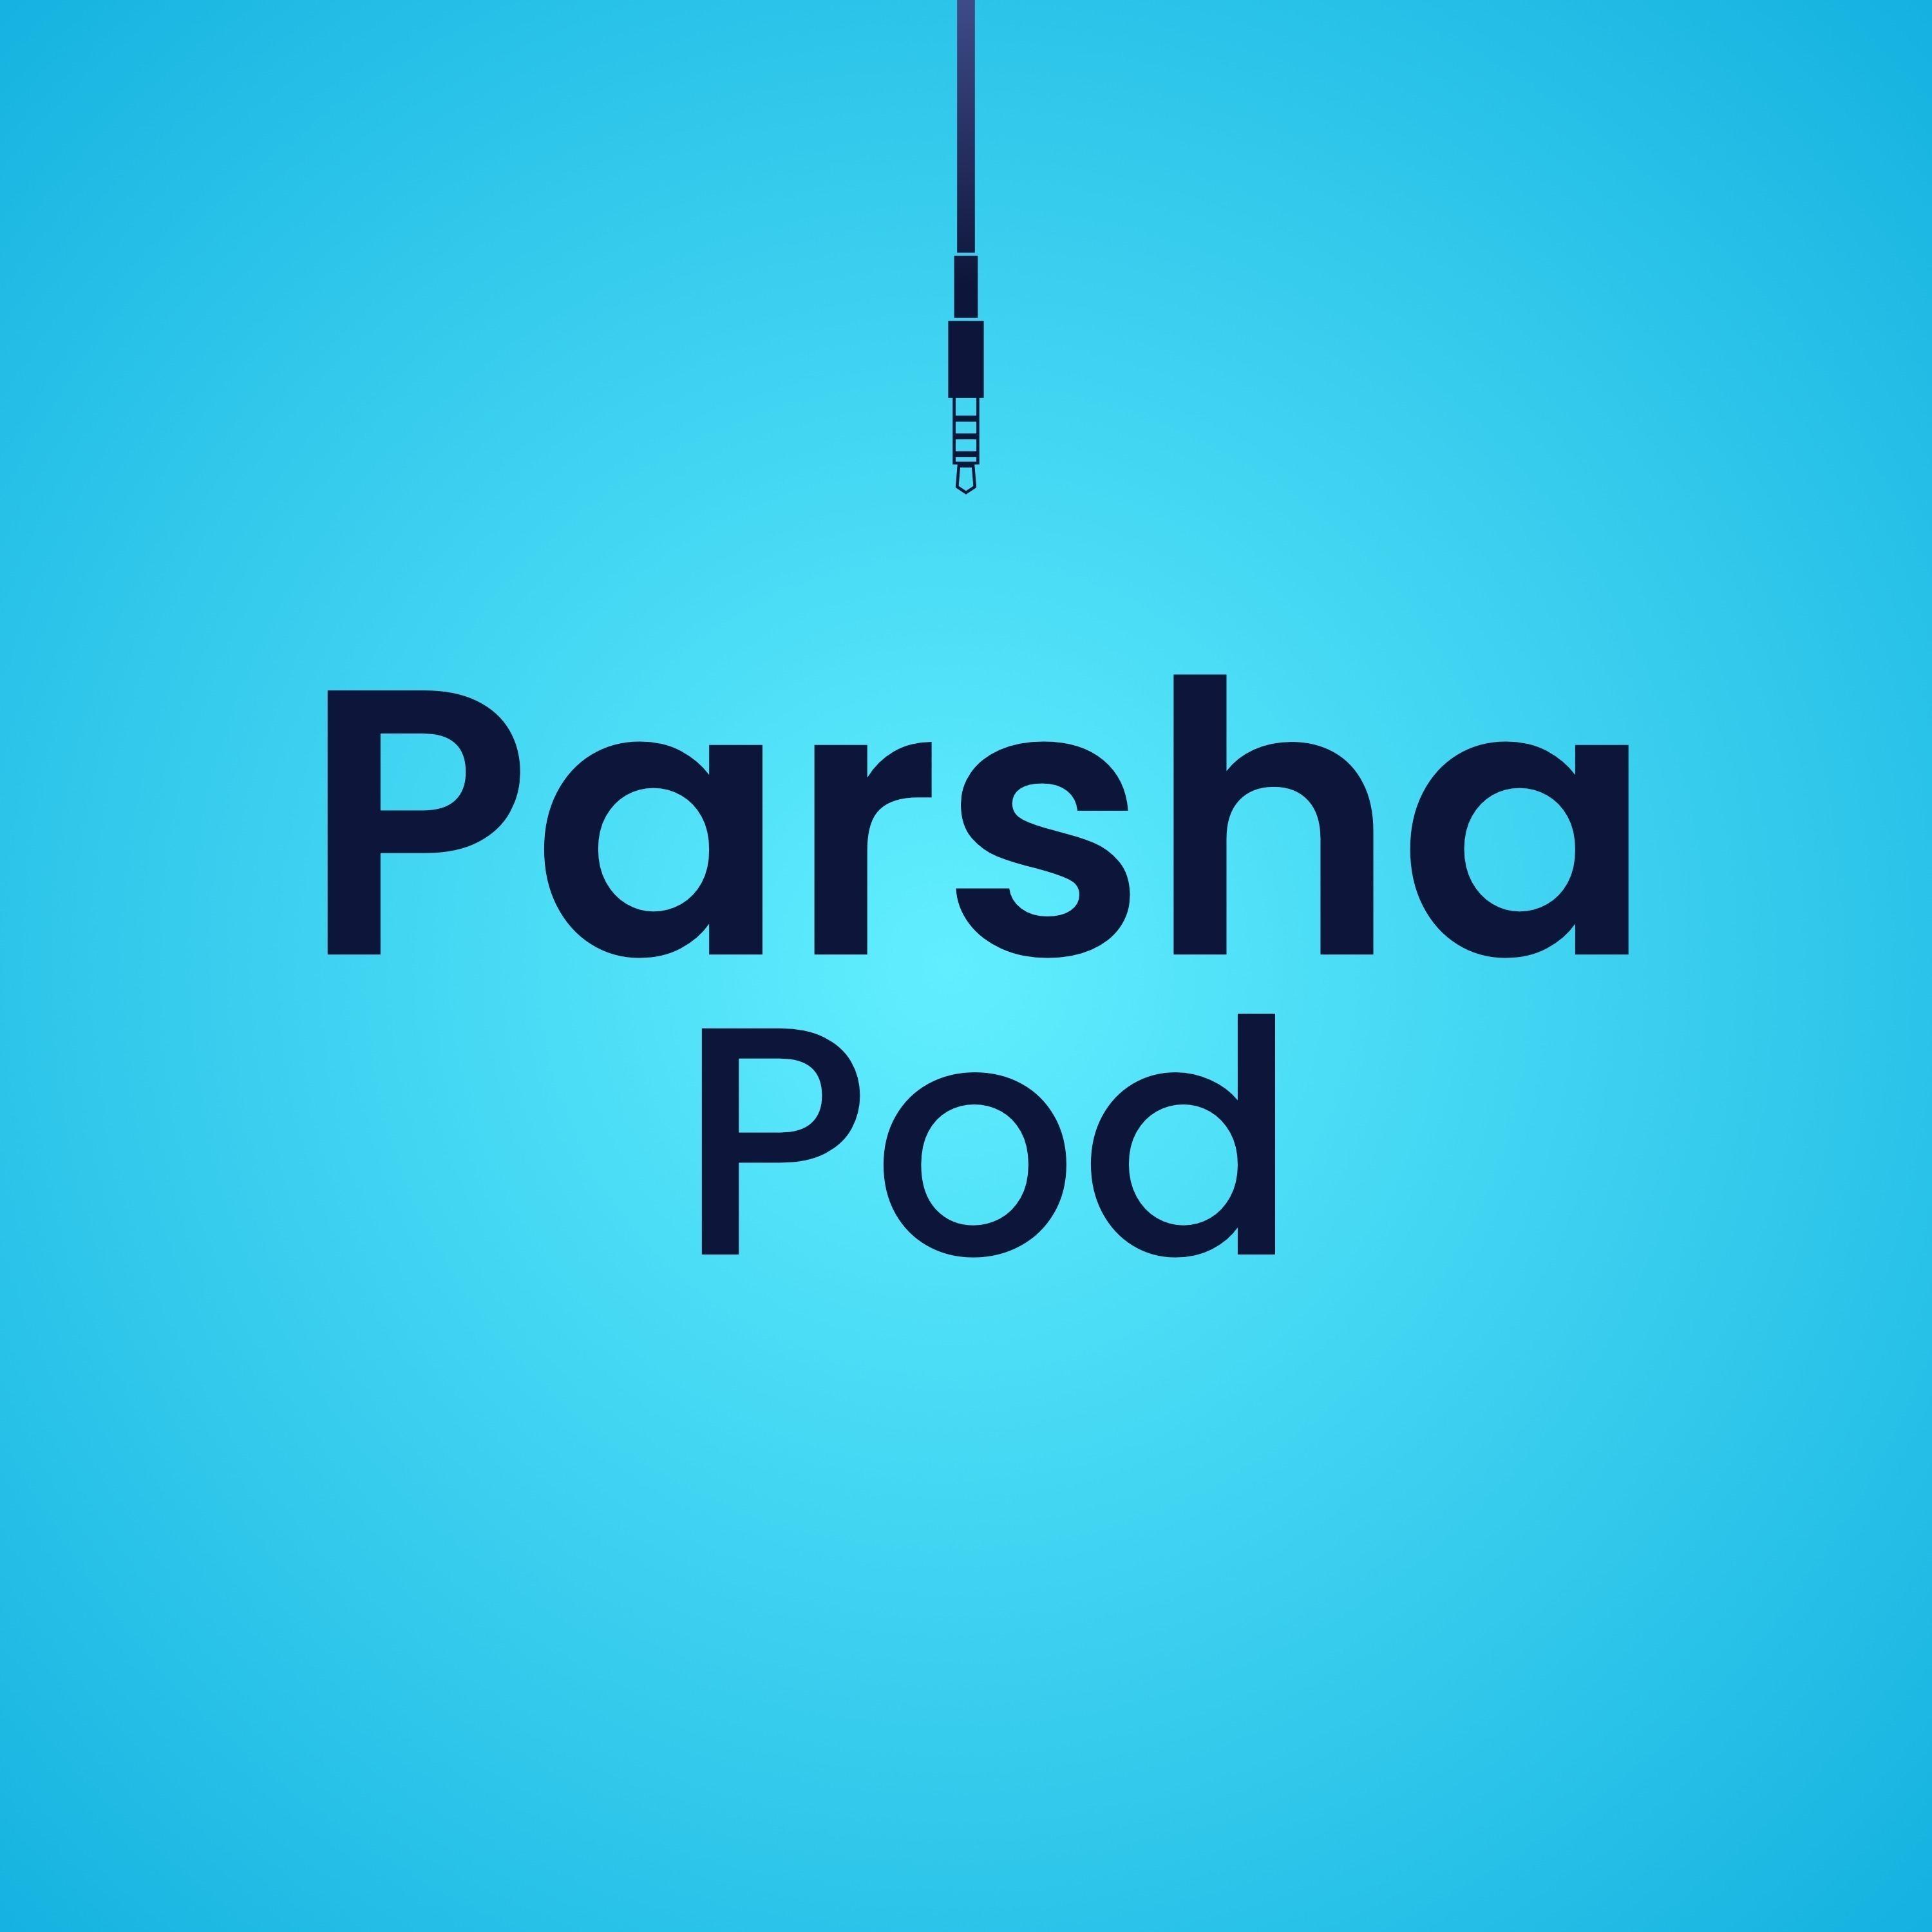 Parsha Pod